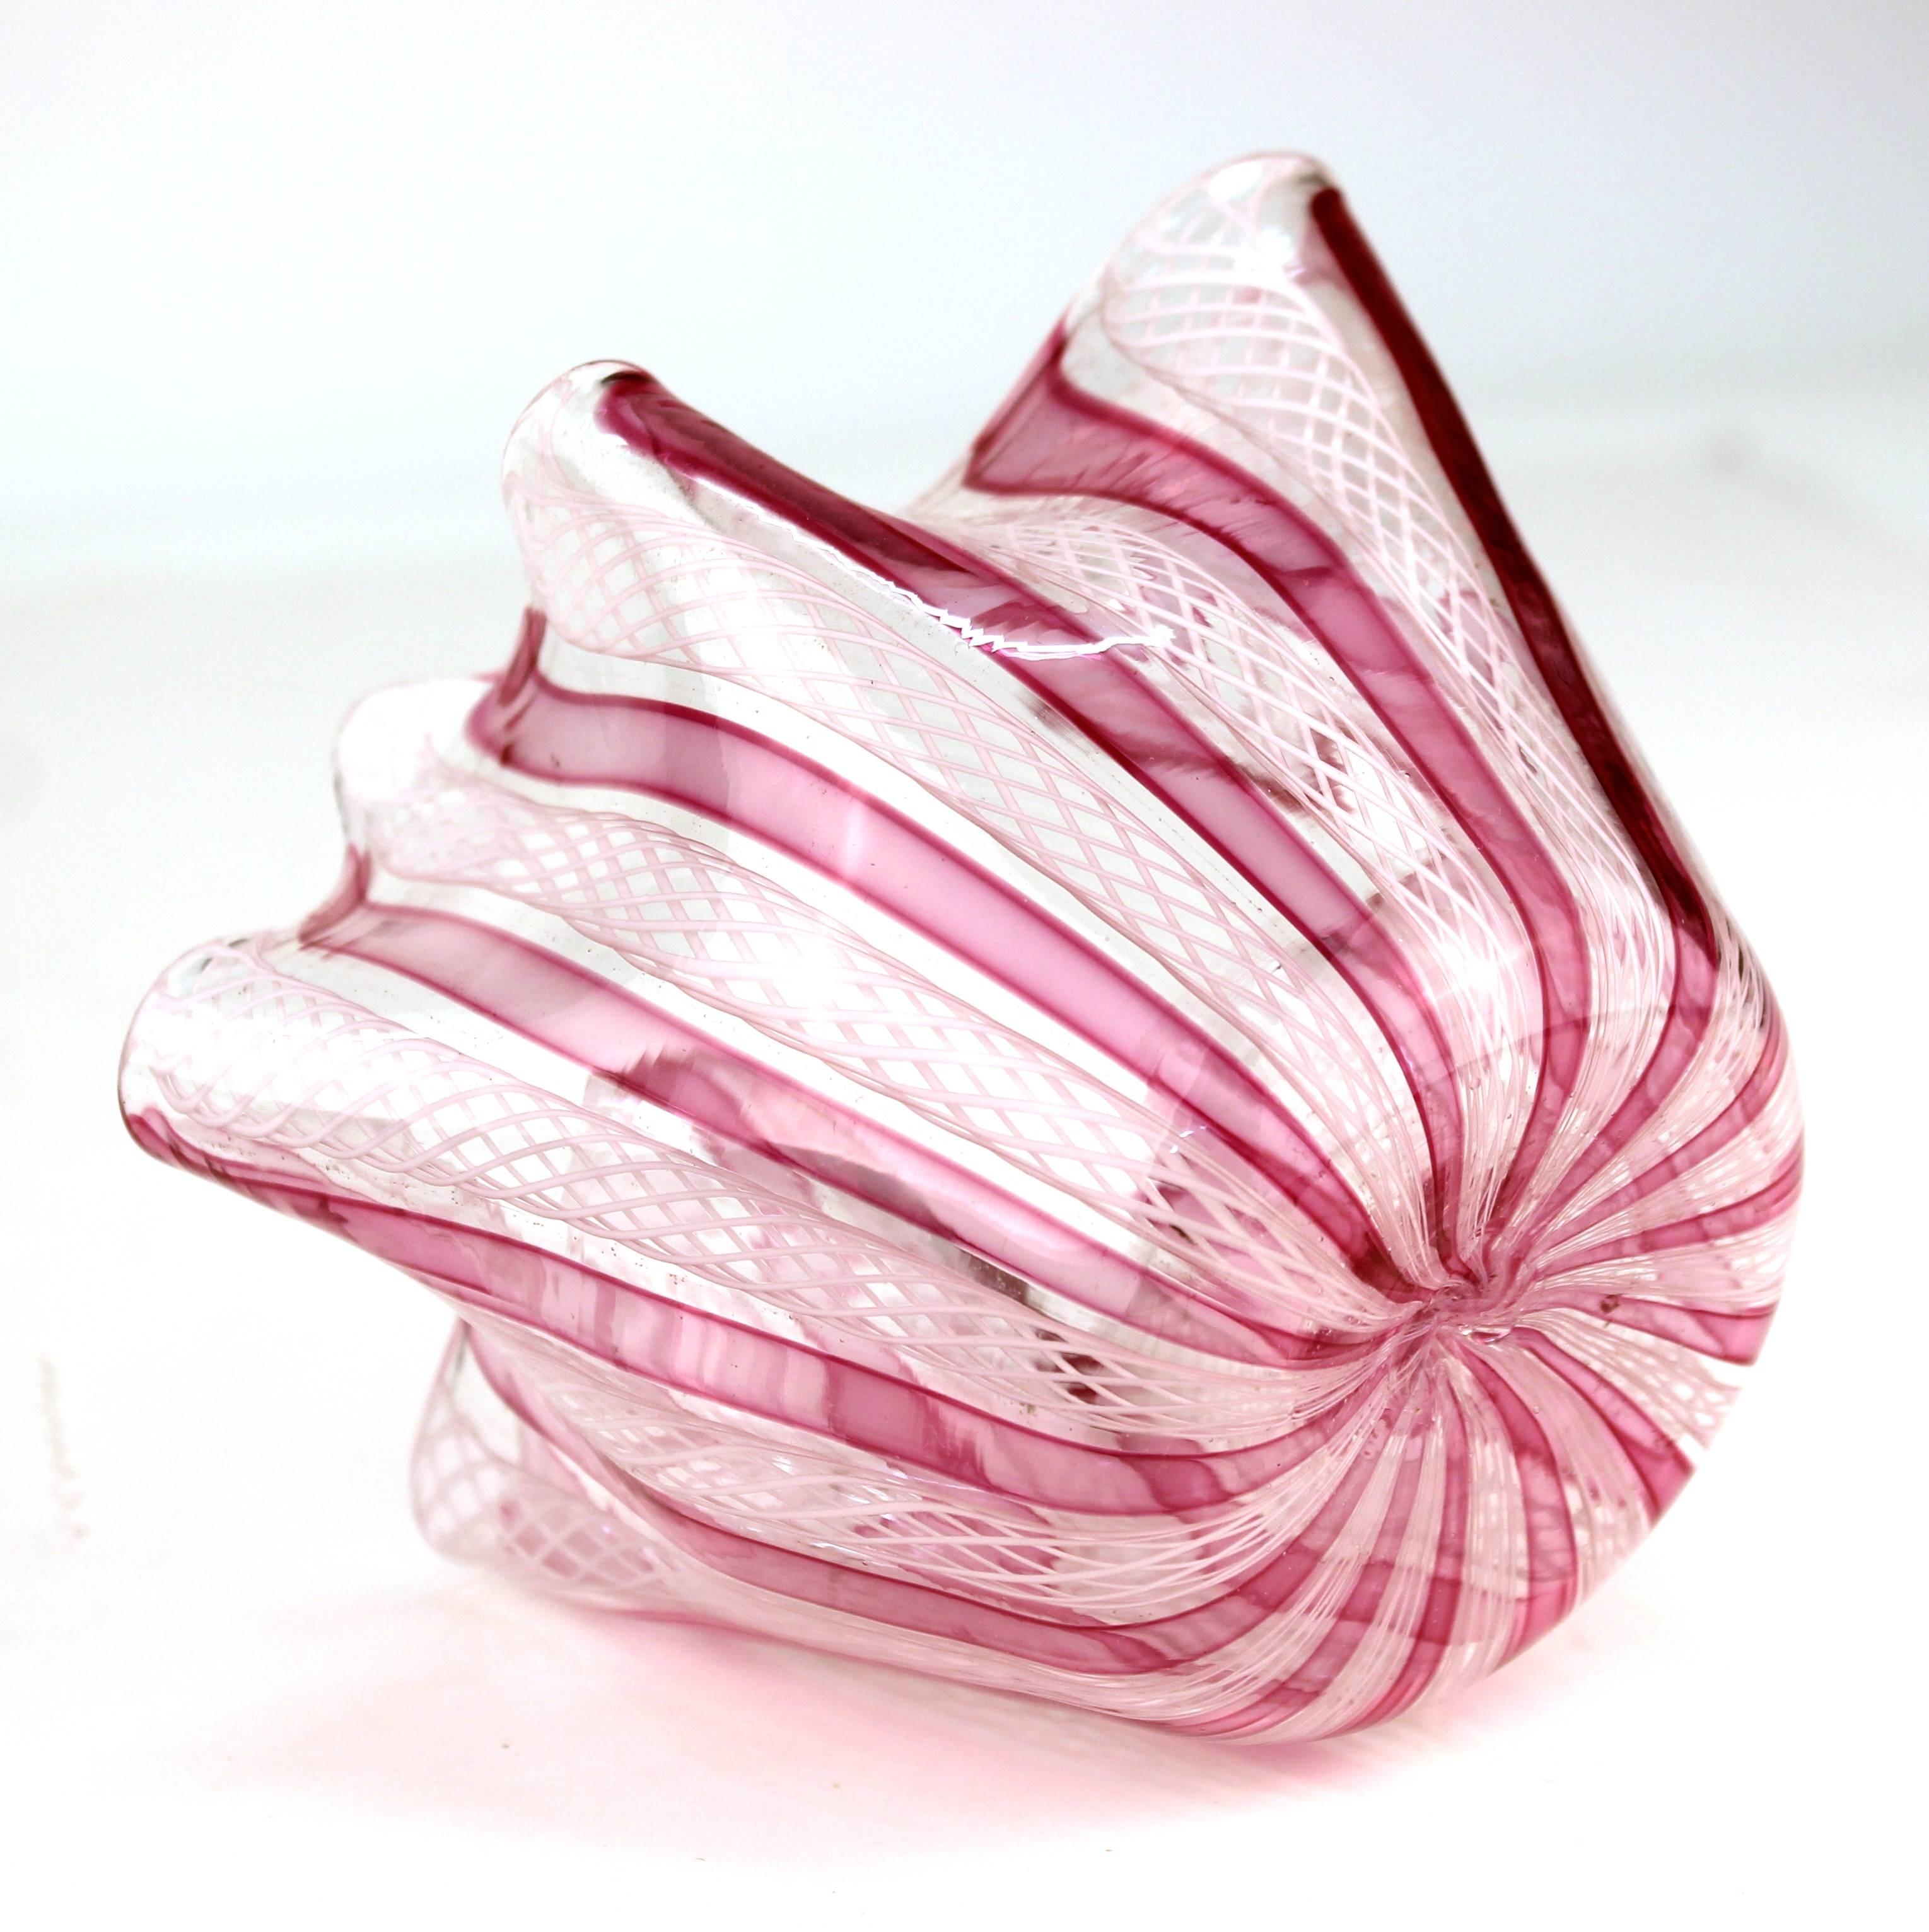 Mid-Century Modern Midcentury Murano Glass Handkerchief Vase in Pink and White